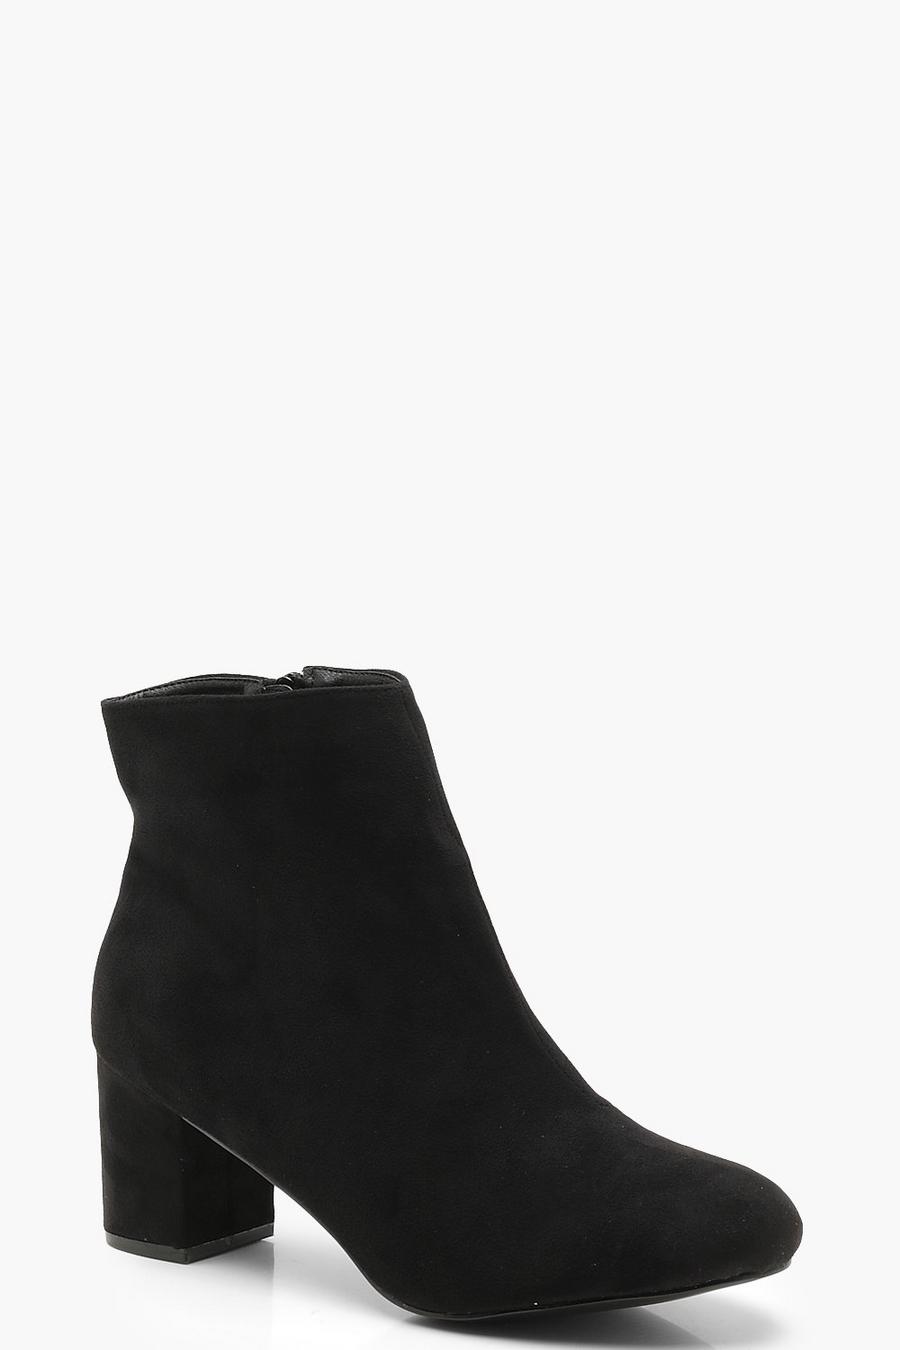 Black Extra Wide Fit Block Heel Shoe Boots